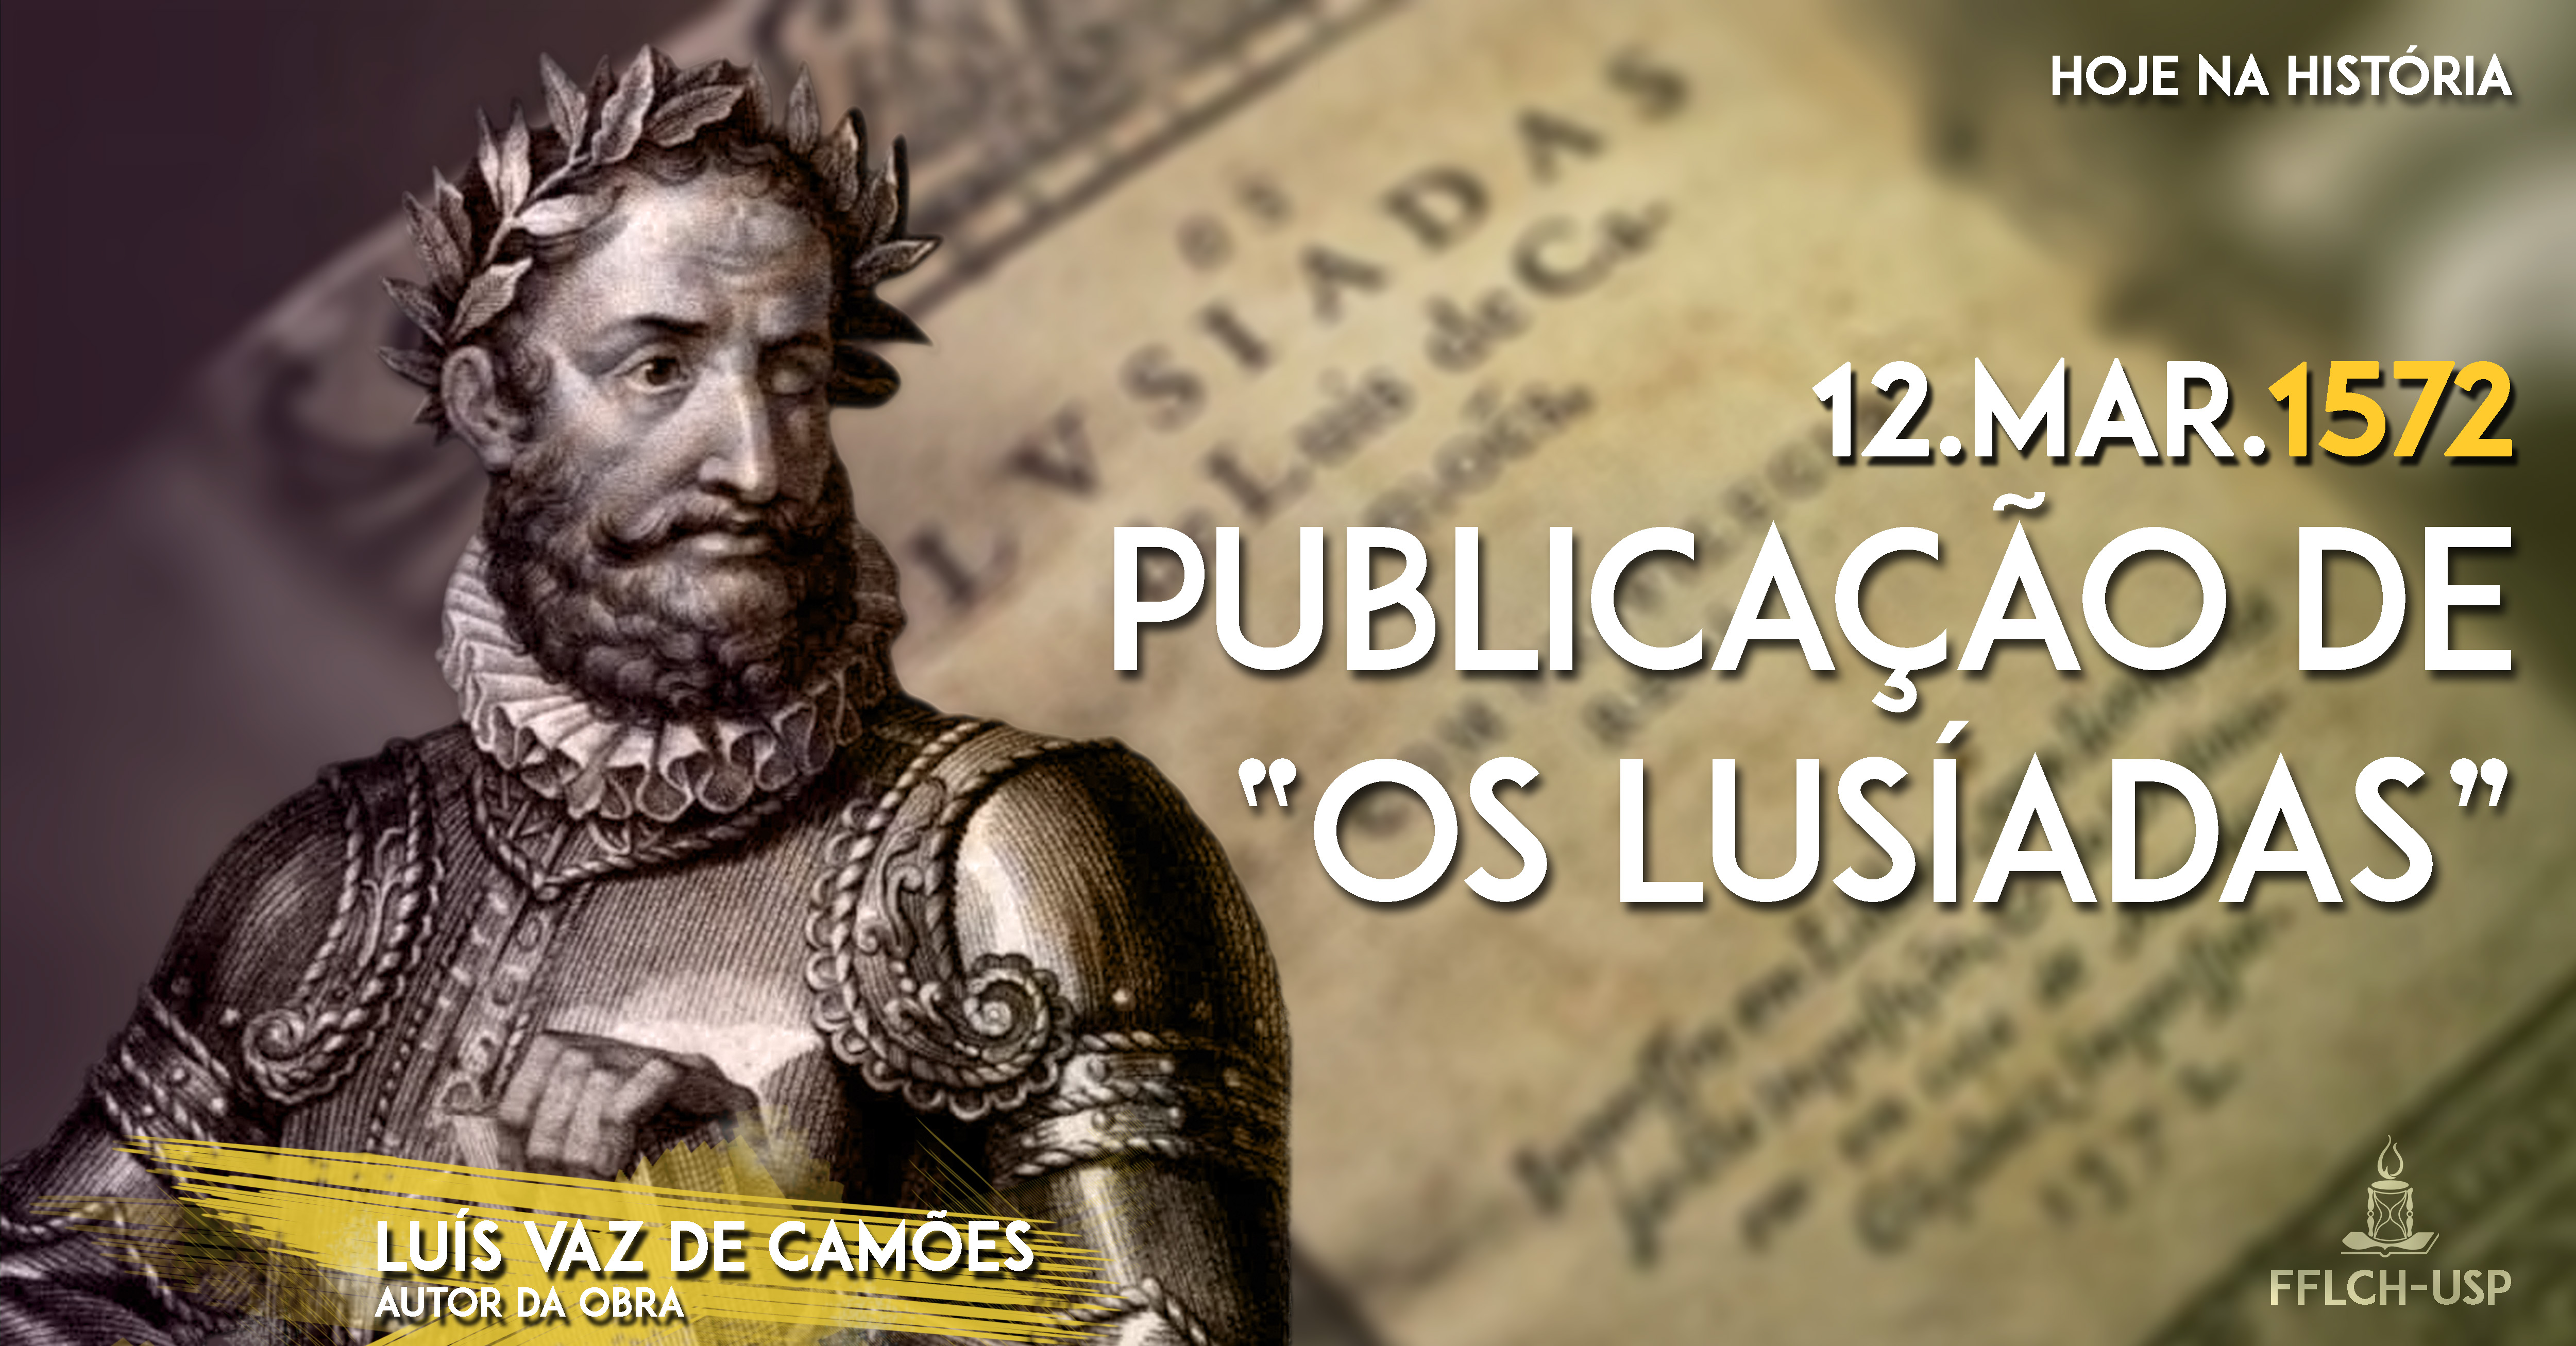 Hoje na História: Publicação de "Os Lusíadas" em 12 março de 1572